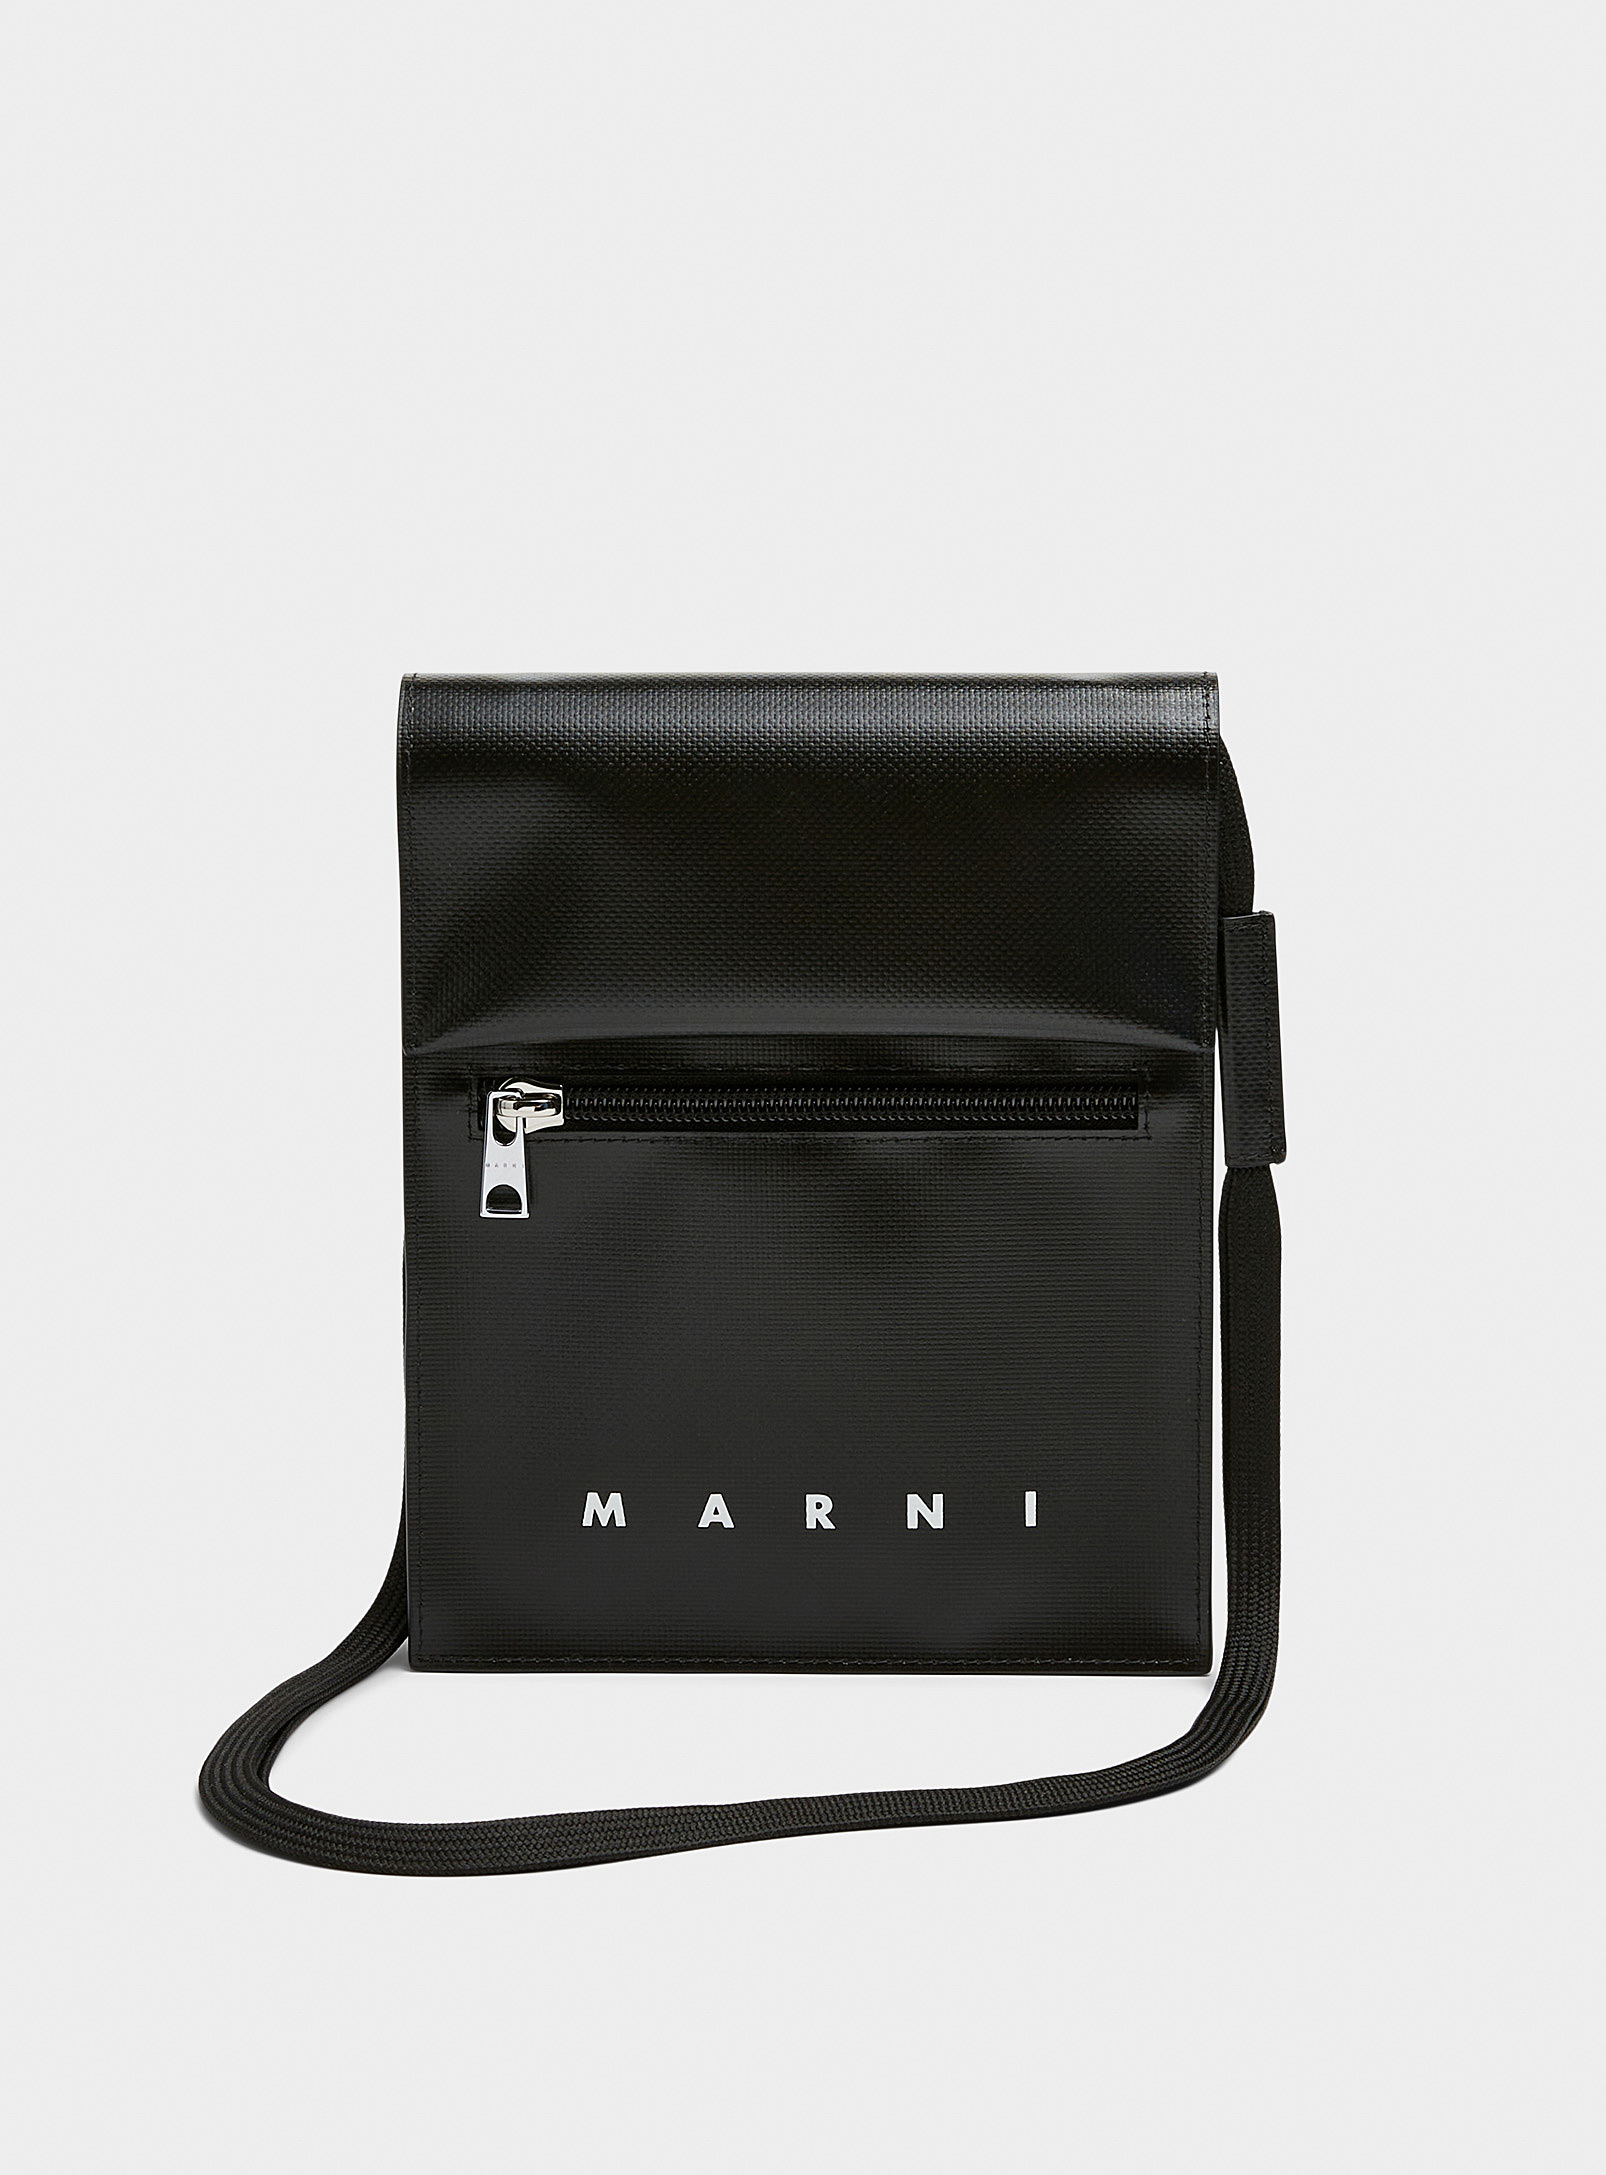 MARNI - Men's Tribeca cross-body bag